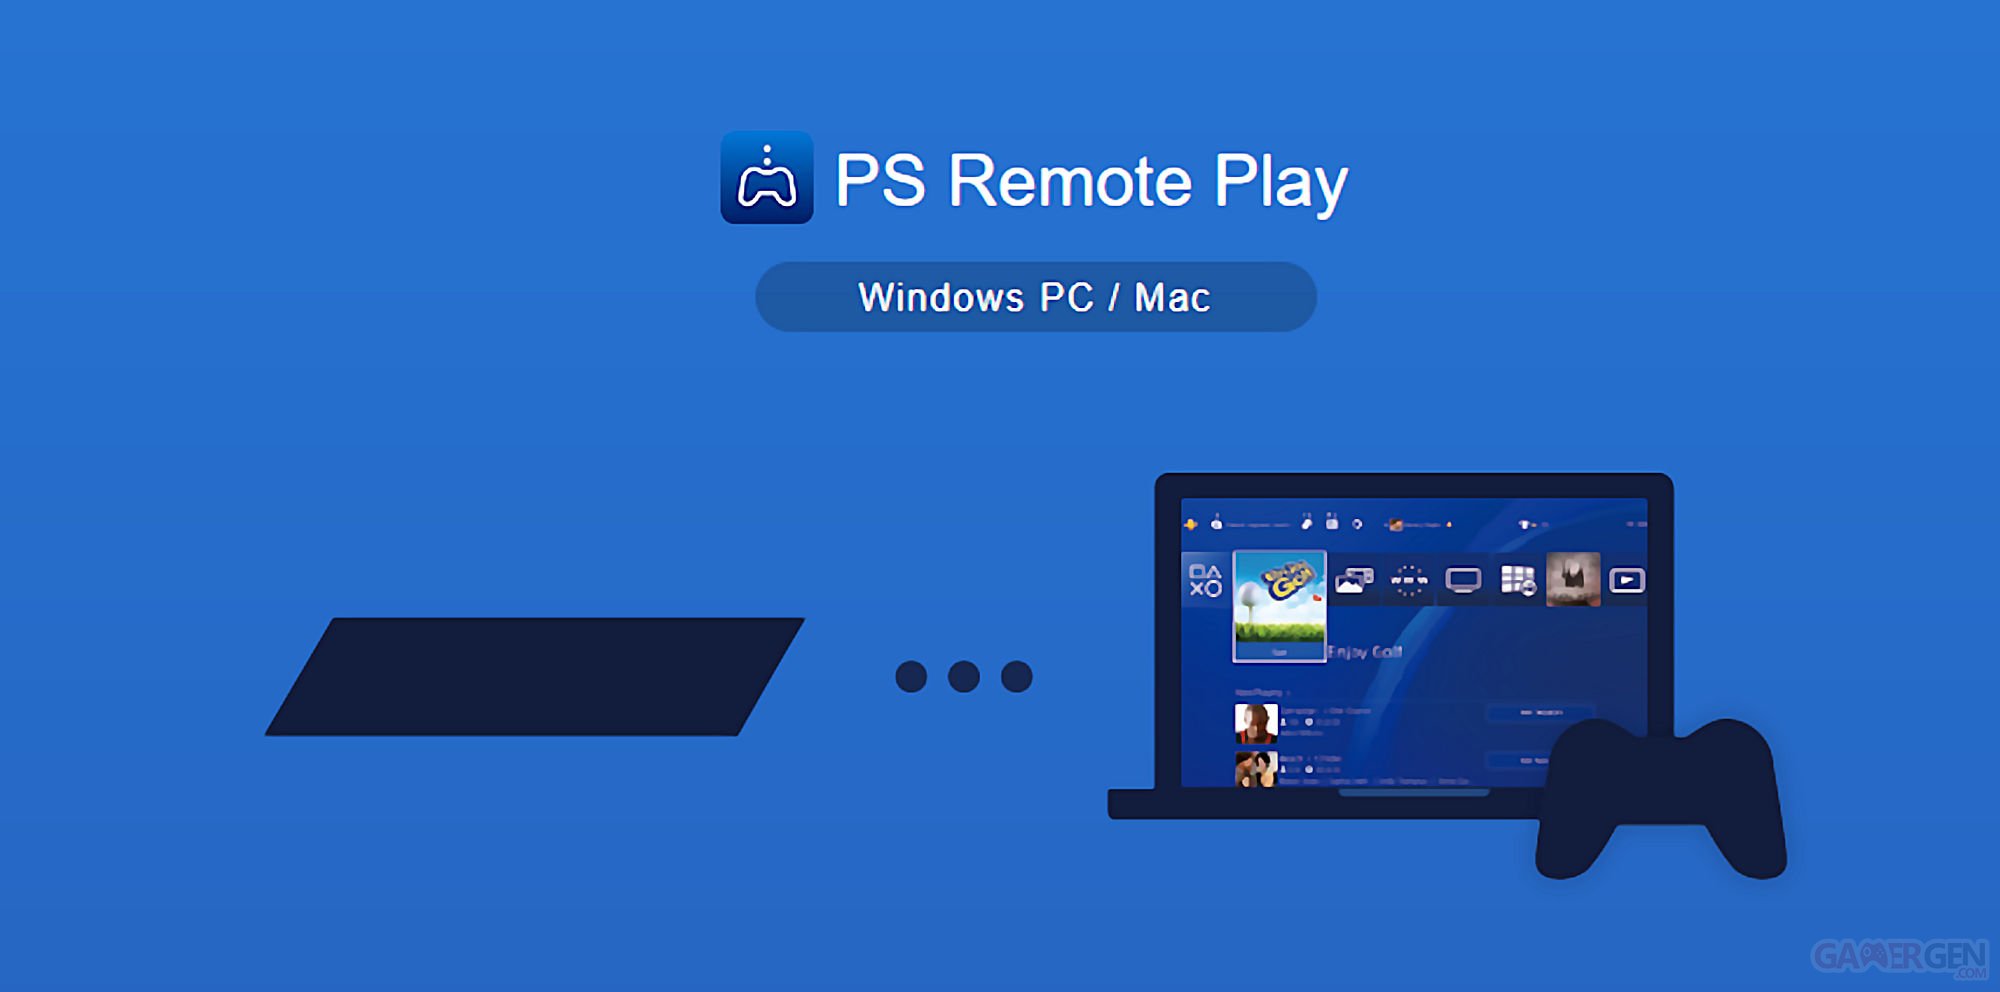 Ps5 portal remote. PS Remote Play. Ps4 Remote Play. Дистанционное управление пс4 с ПК. PS Remote Play Windows 10.